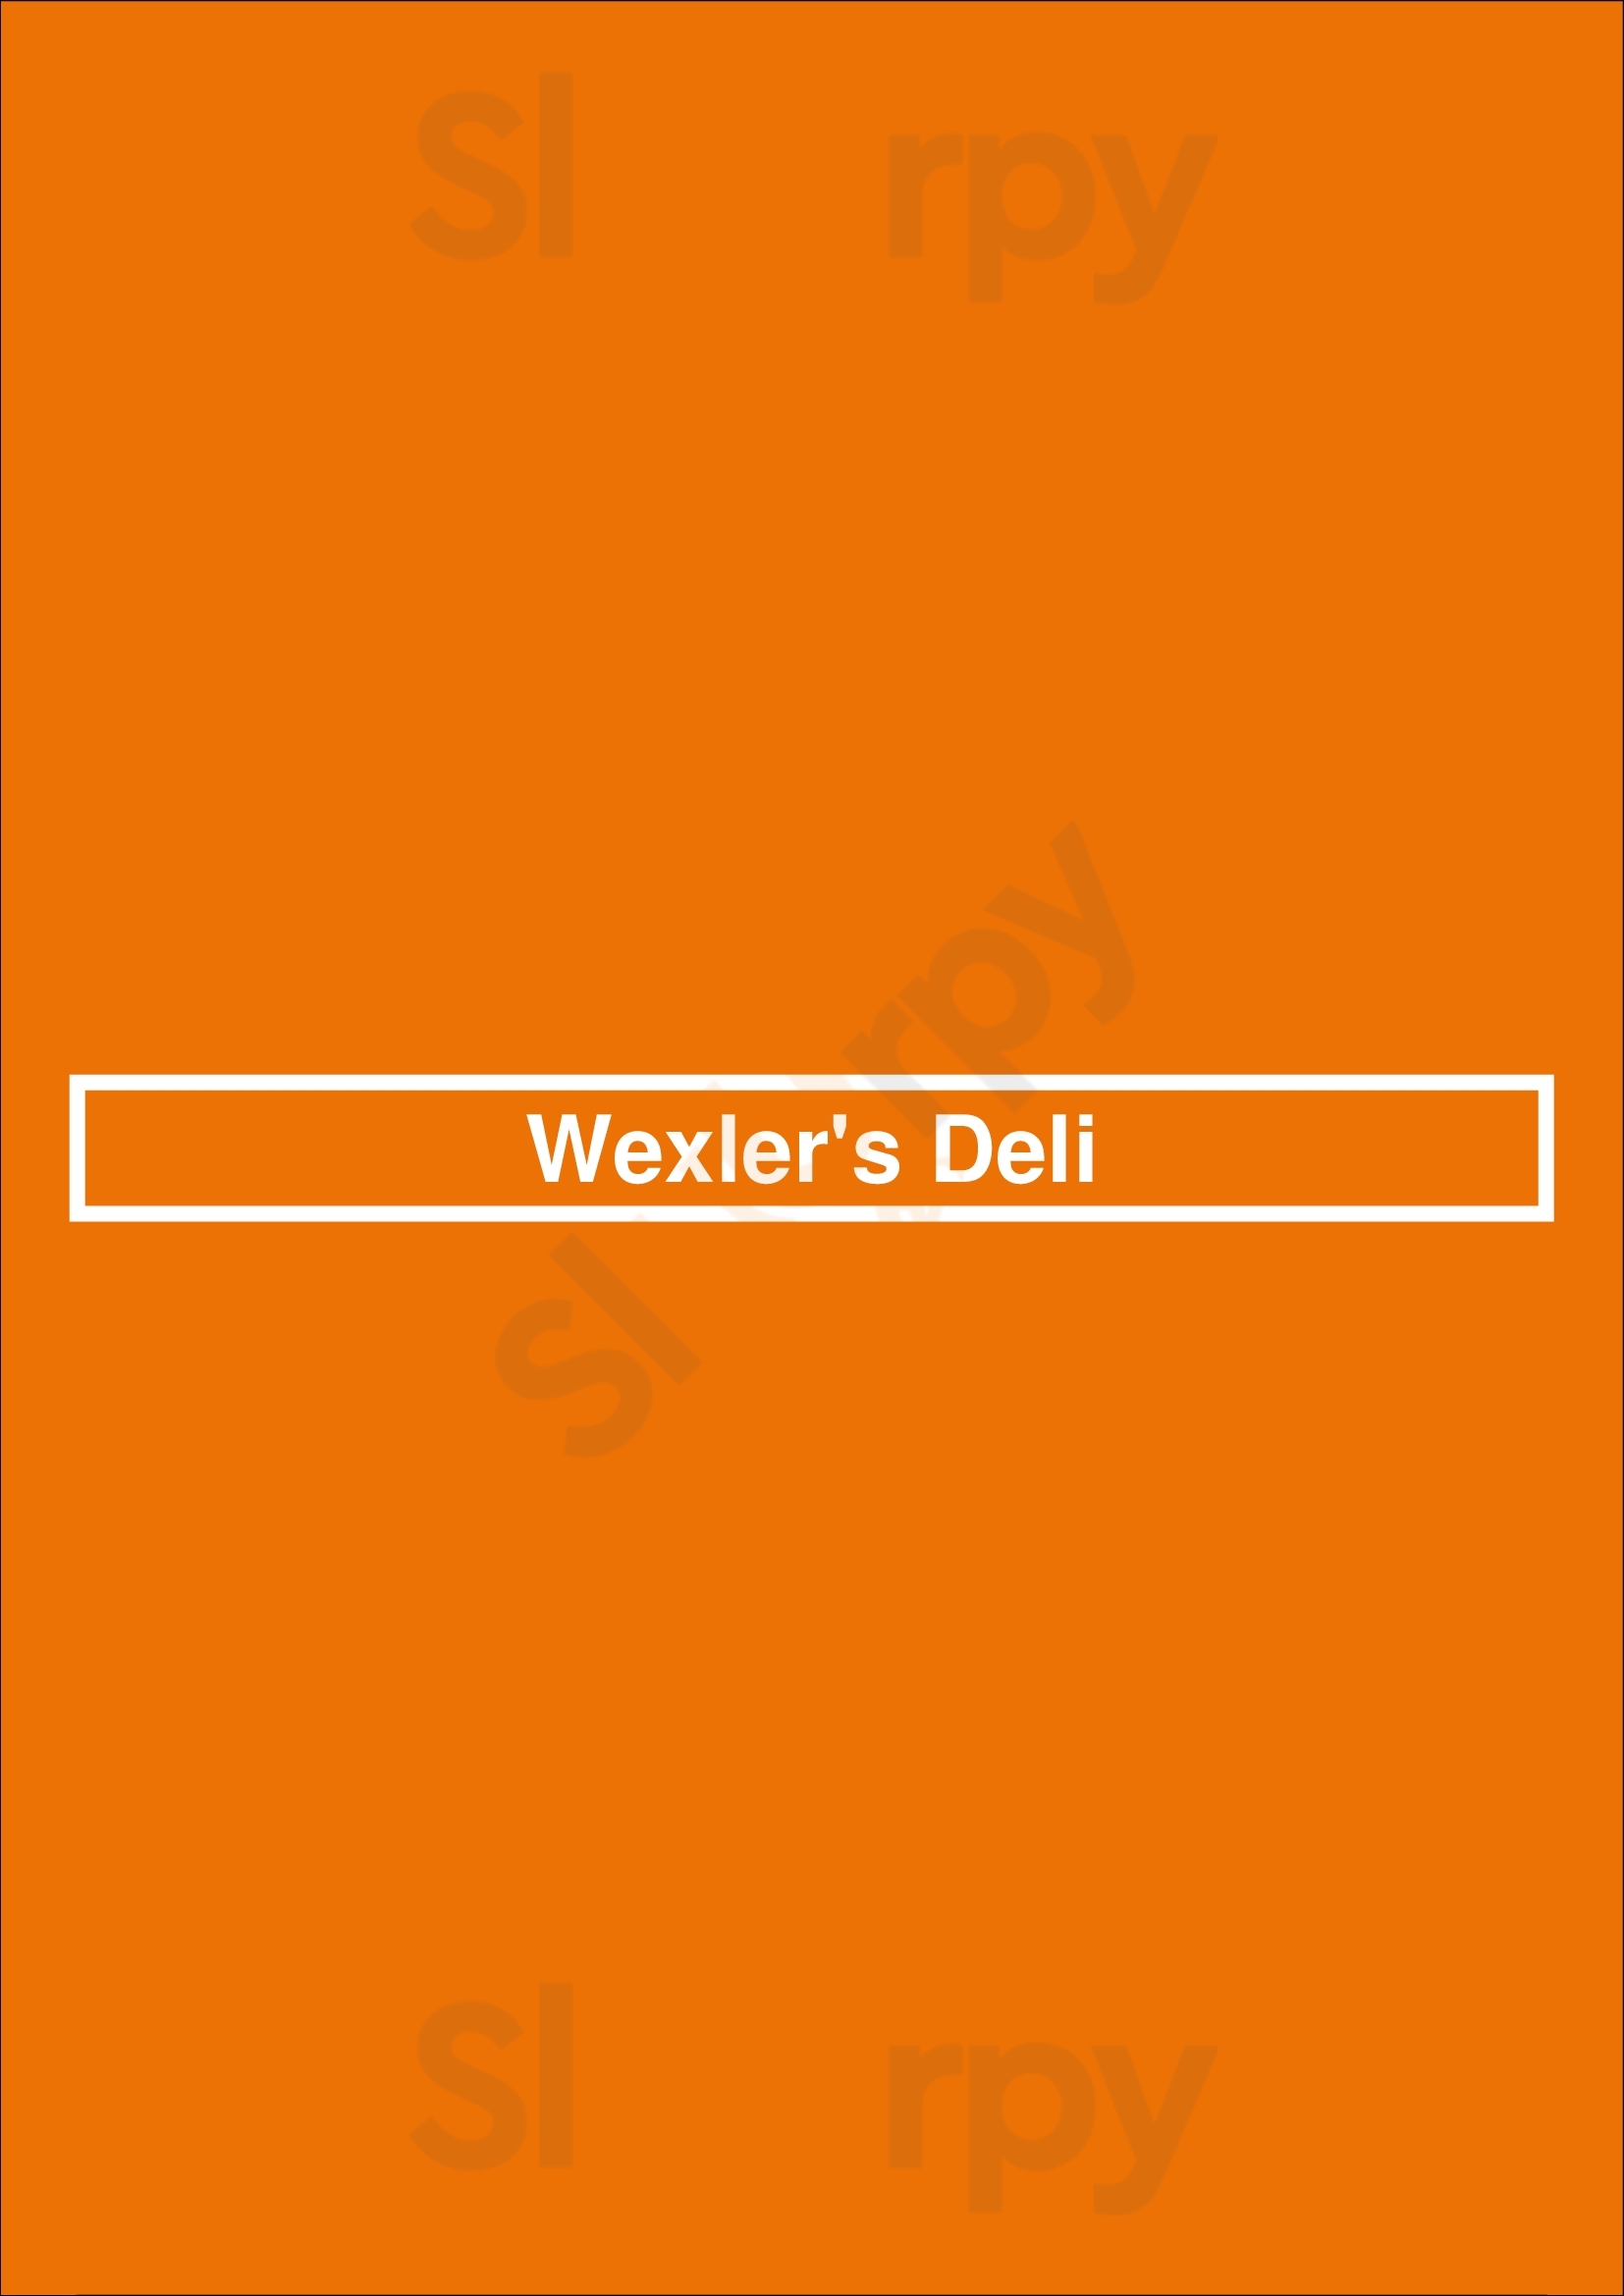 Wexler's Deli Los Angeles Menu - 1